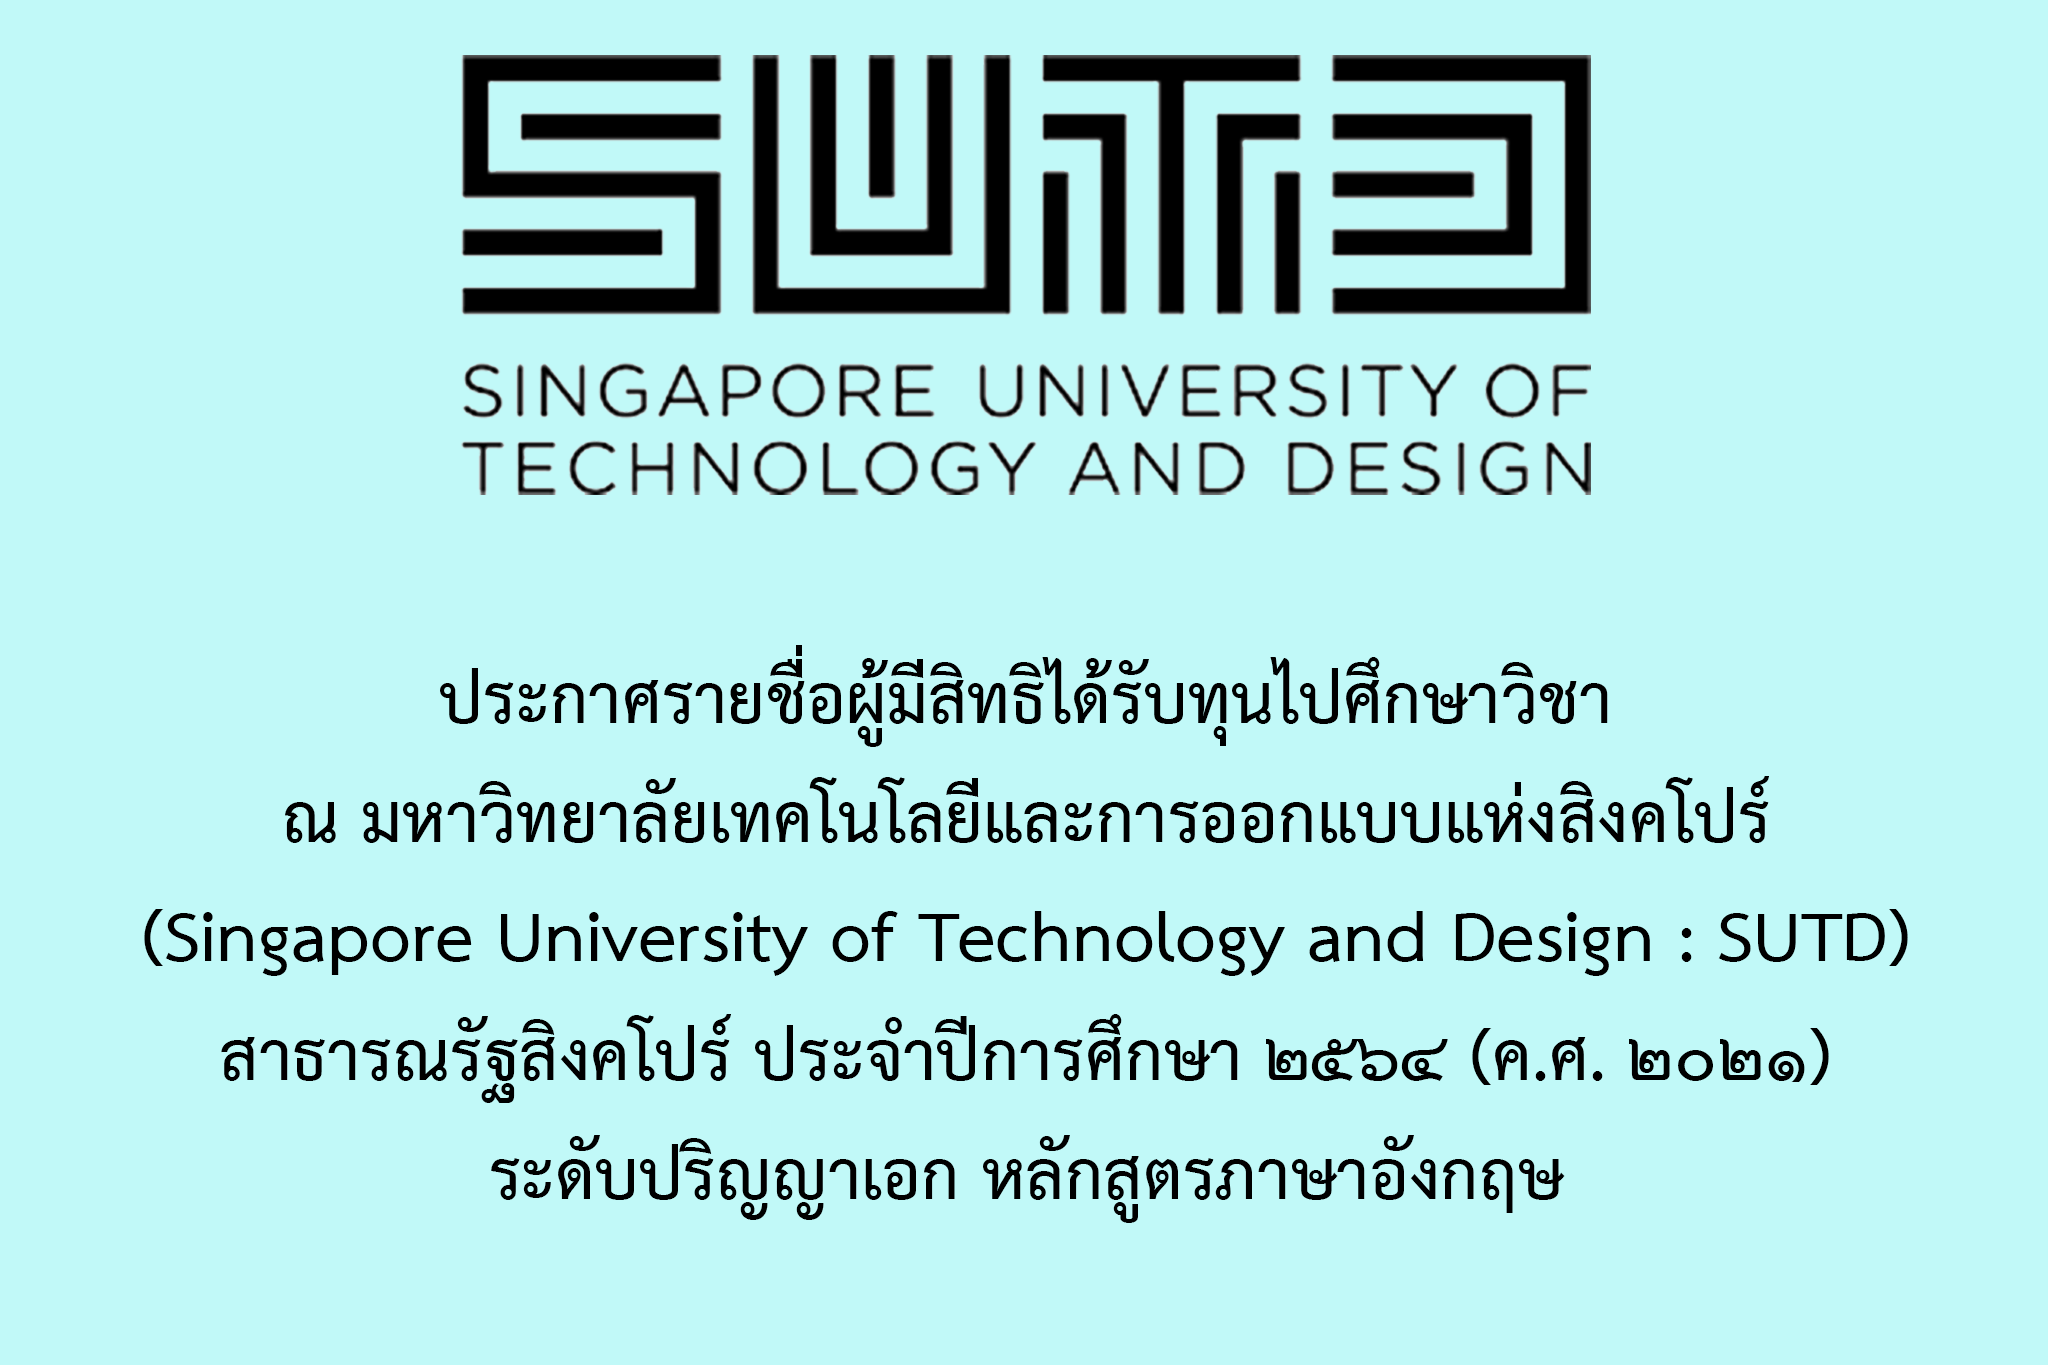     ประกาศรายชื่อผู้มีสิทธิได้รับทุนไปศึกษาวิชา ณ มหาวิทยาลัยเทคโนโลยีและการออกแบบแห่งสิงคโปร์ (Singapore University of Technology and Design : SUTD) สาธารณรัฐสิงคโปร์ ประจำปีการศึกษา ๒๕๖๕ (ค.ศ. ๒๐๒๒) ระดับปริญญาเอก หลักสูตรภาษาอังกฤษ